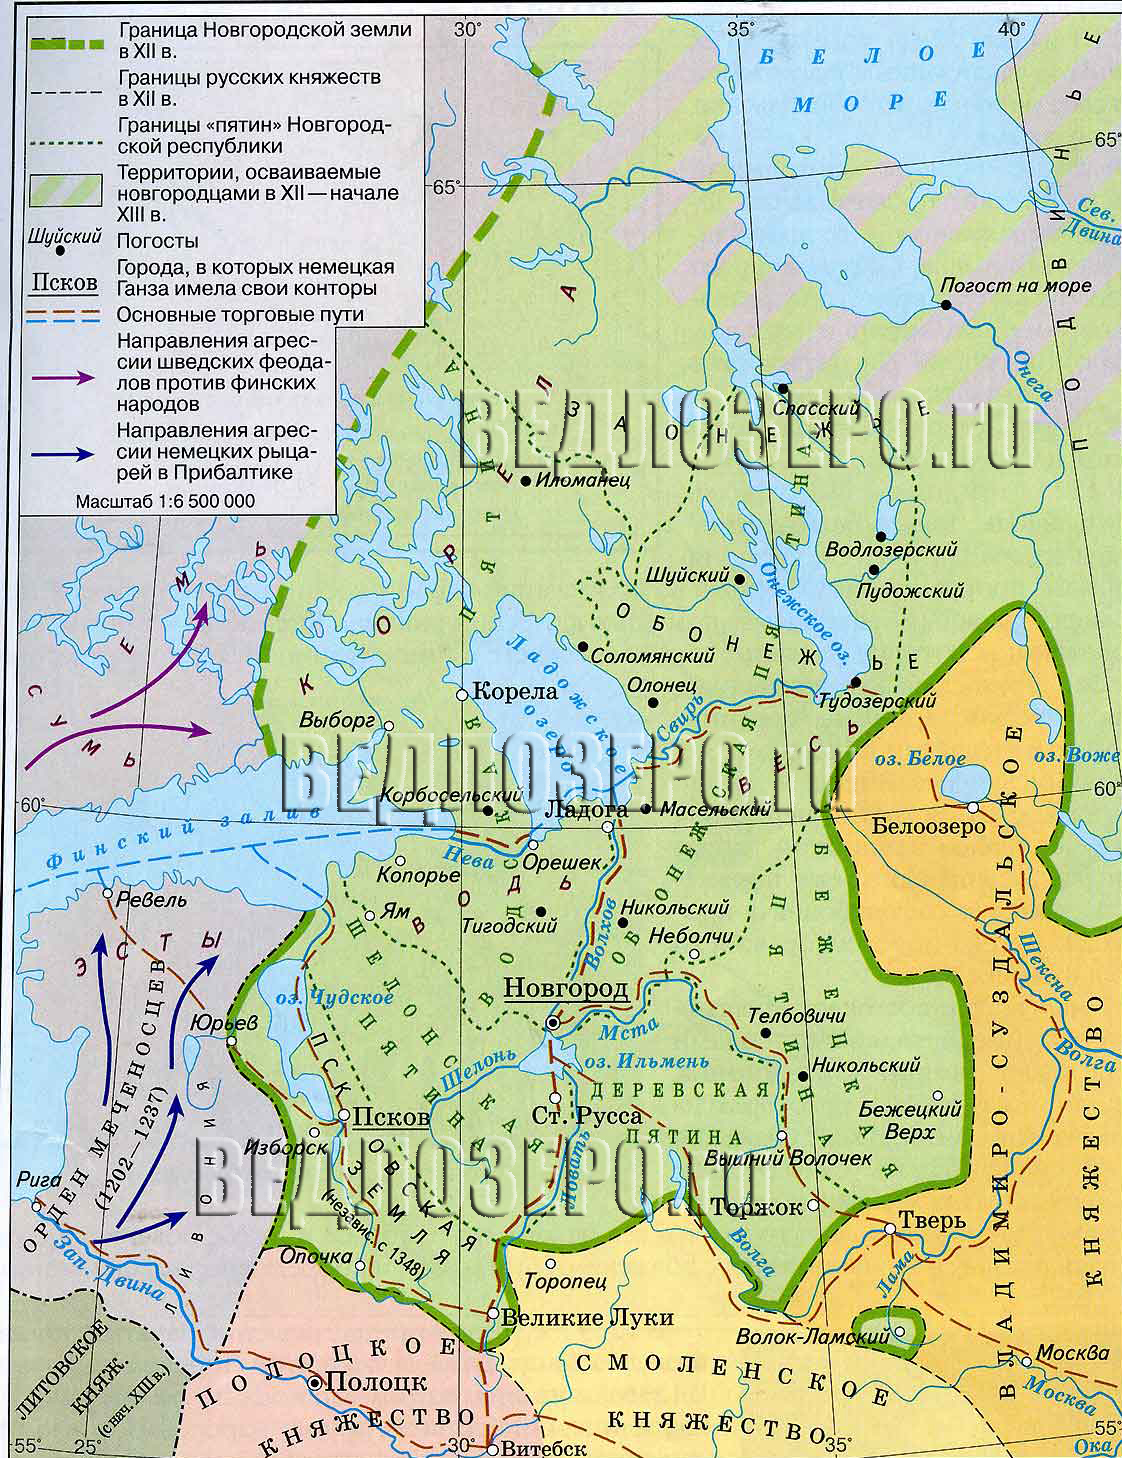 Карта пятин Новгородской феодальной республики. 12-13 век